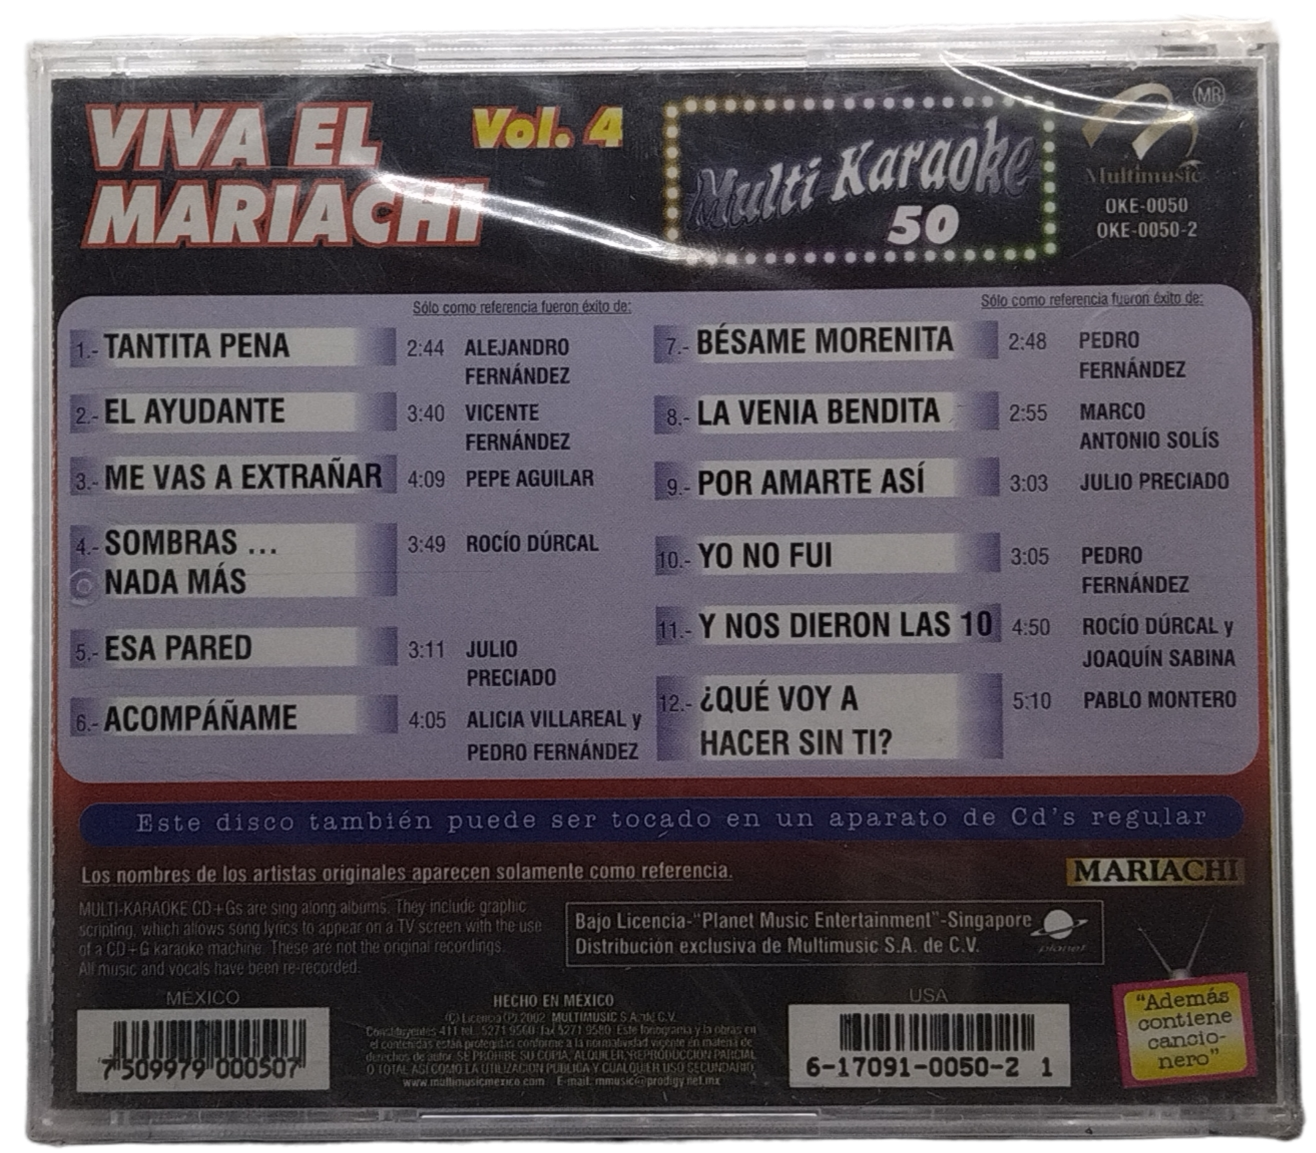 multi karaoke  - canta como viva el mariachi vol.4